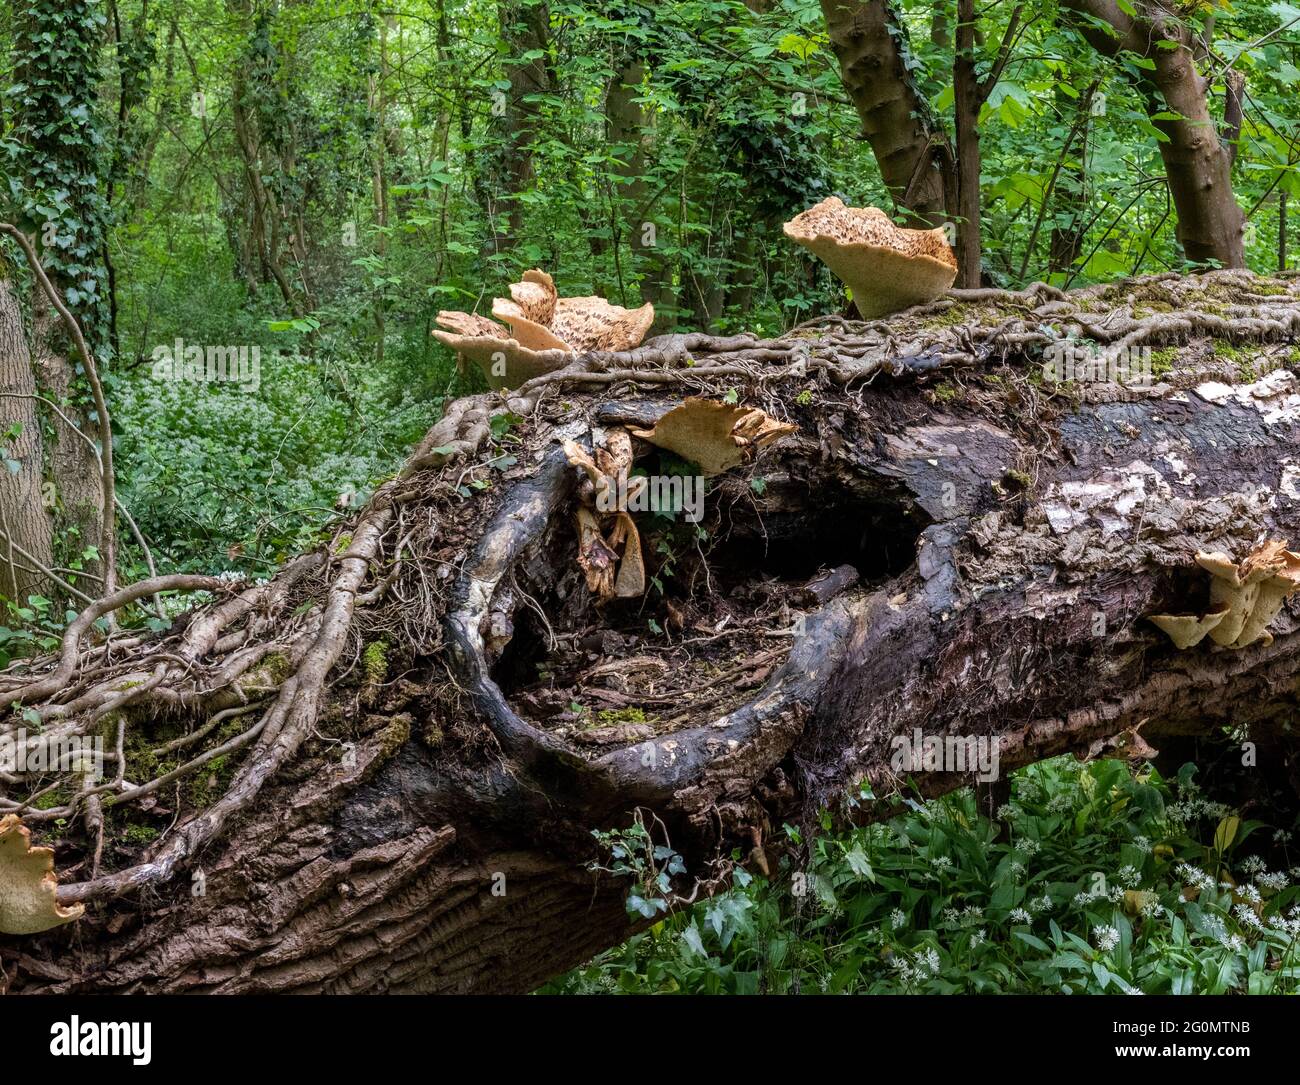 DRYAD’S SADDLE, Cerioporus squamosus, Pheasant mushroom, Pheasant back, Polyporus squamosus Stock Photo